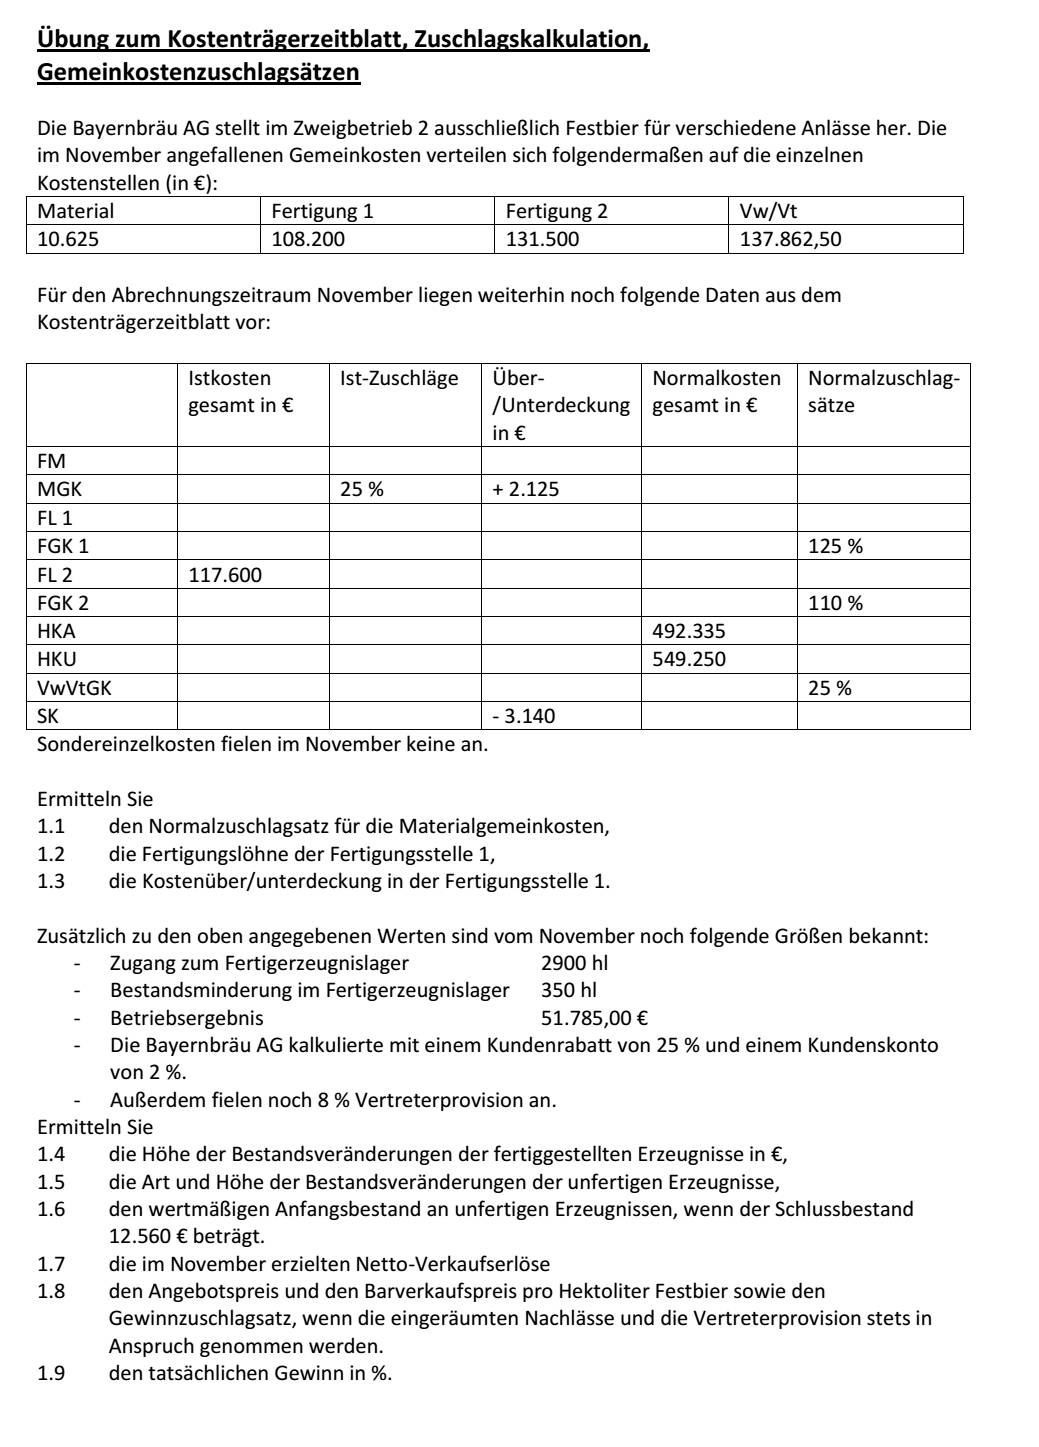  (image: https://hssm.hqedv.de/uploads/Zuschlags-Angebotskalkulation/KLRKalkulation11.jpg) 